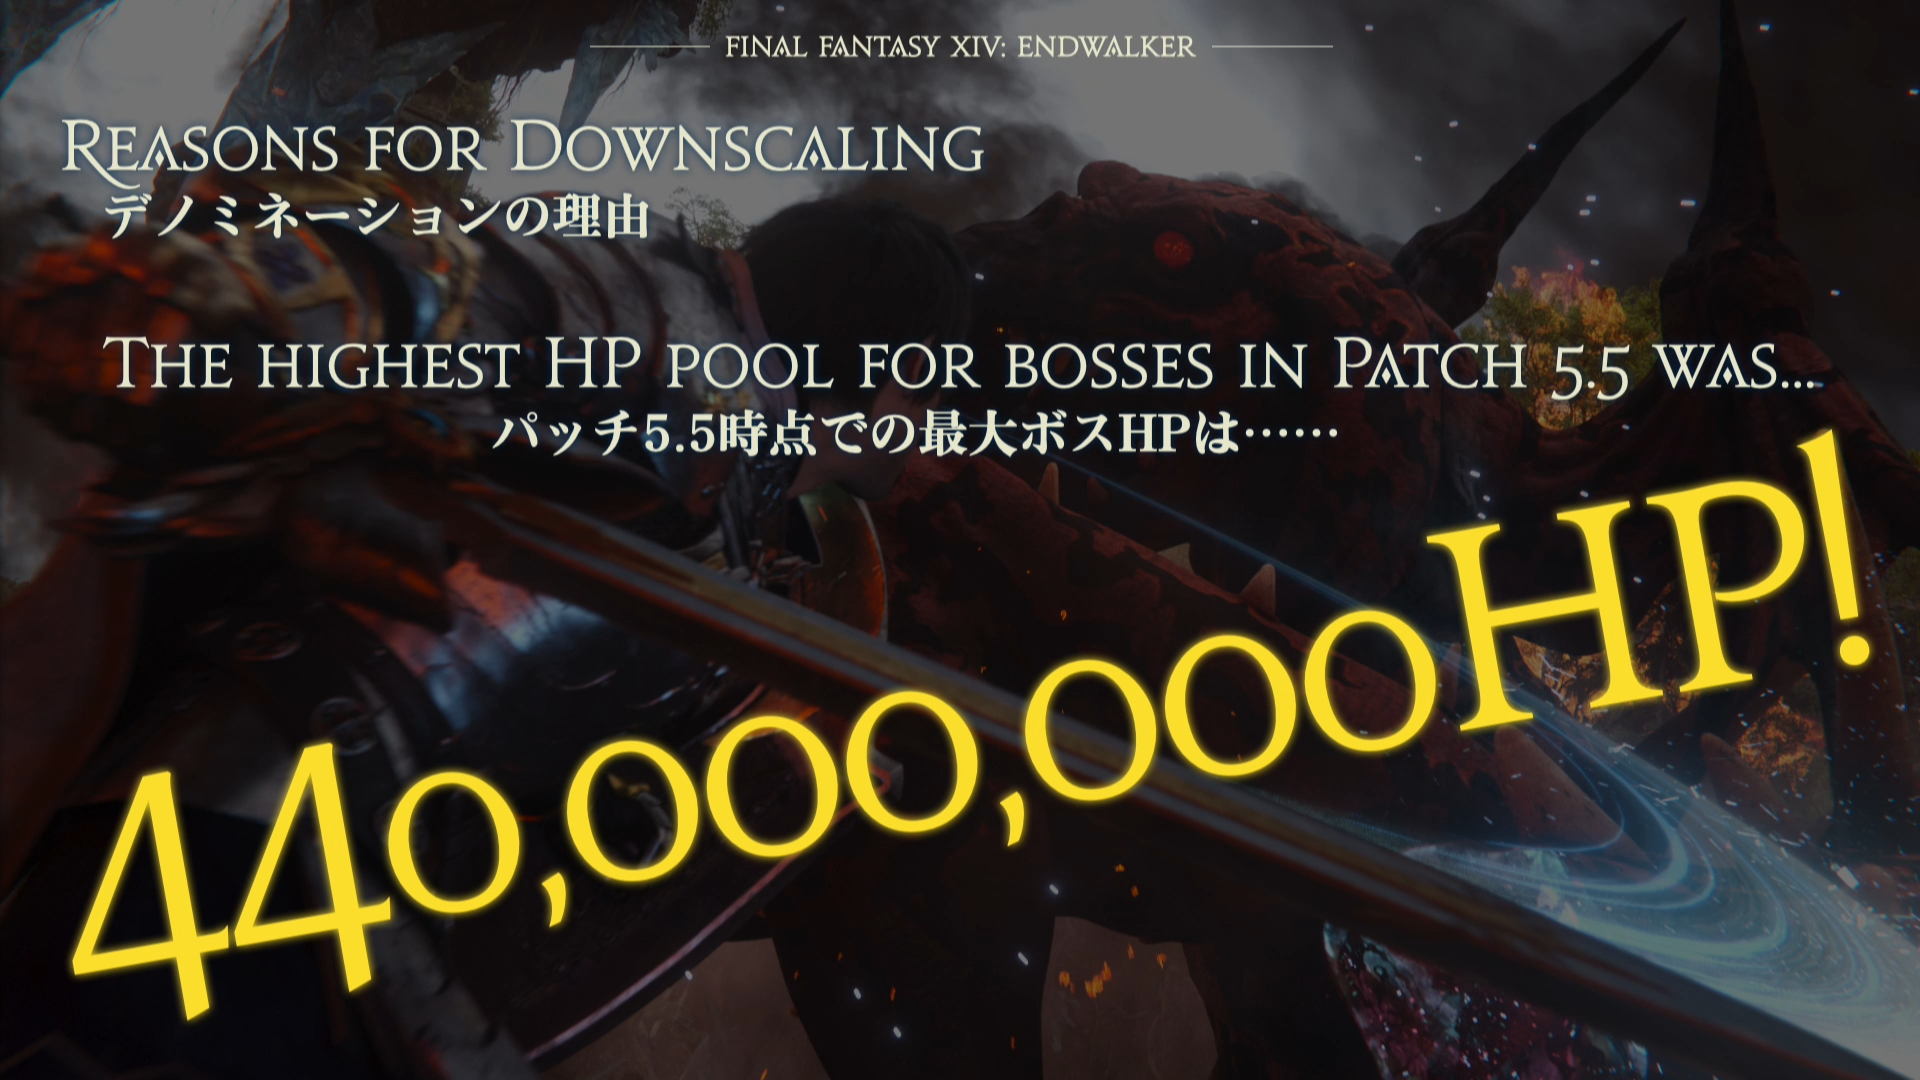 FFXIV 6.0 Endwalker: Boss HP in 5.5 Reaching 440 million!